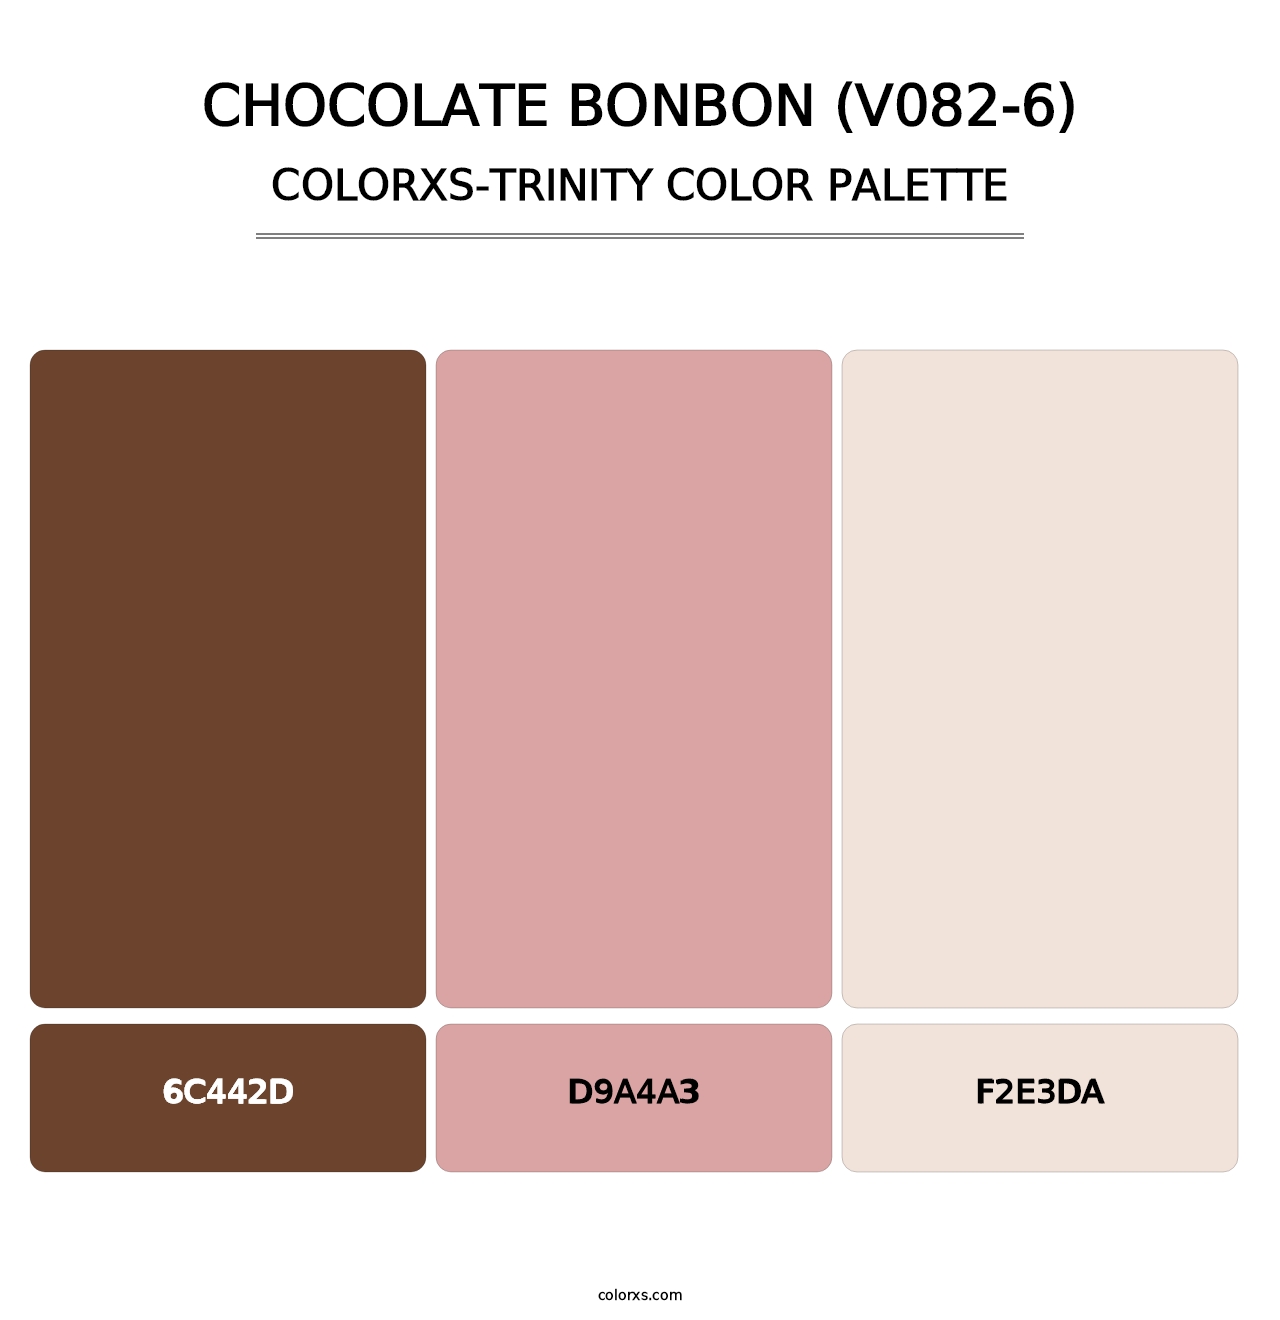 Chocolate Bonbon (V082-6) - Colorxs Trinity Palette